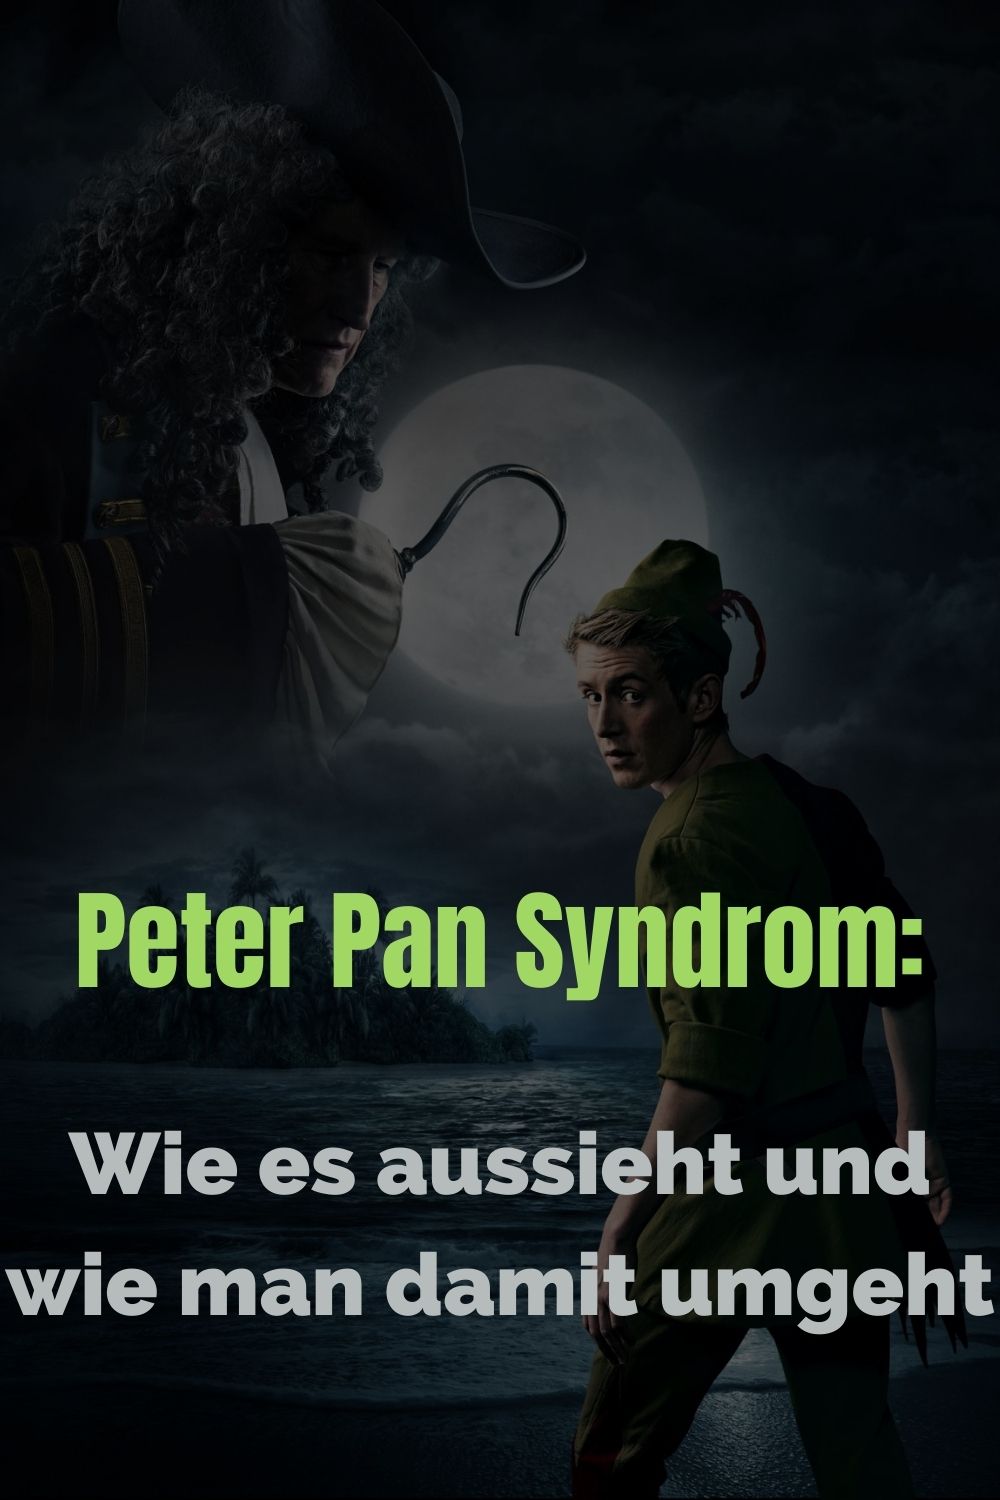 Peter-Pan-Syndrom-Wie-es-aussieht-und-wie-man-damit-umgeht